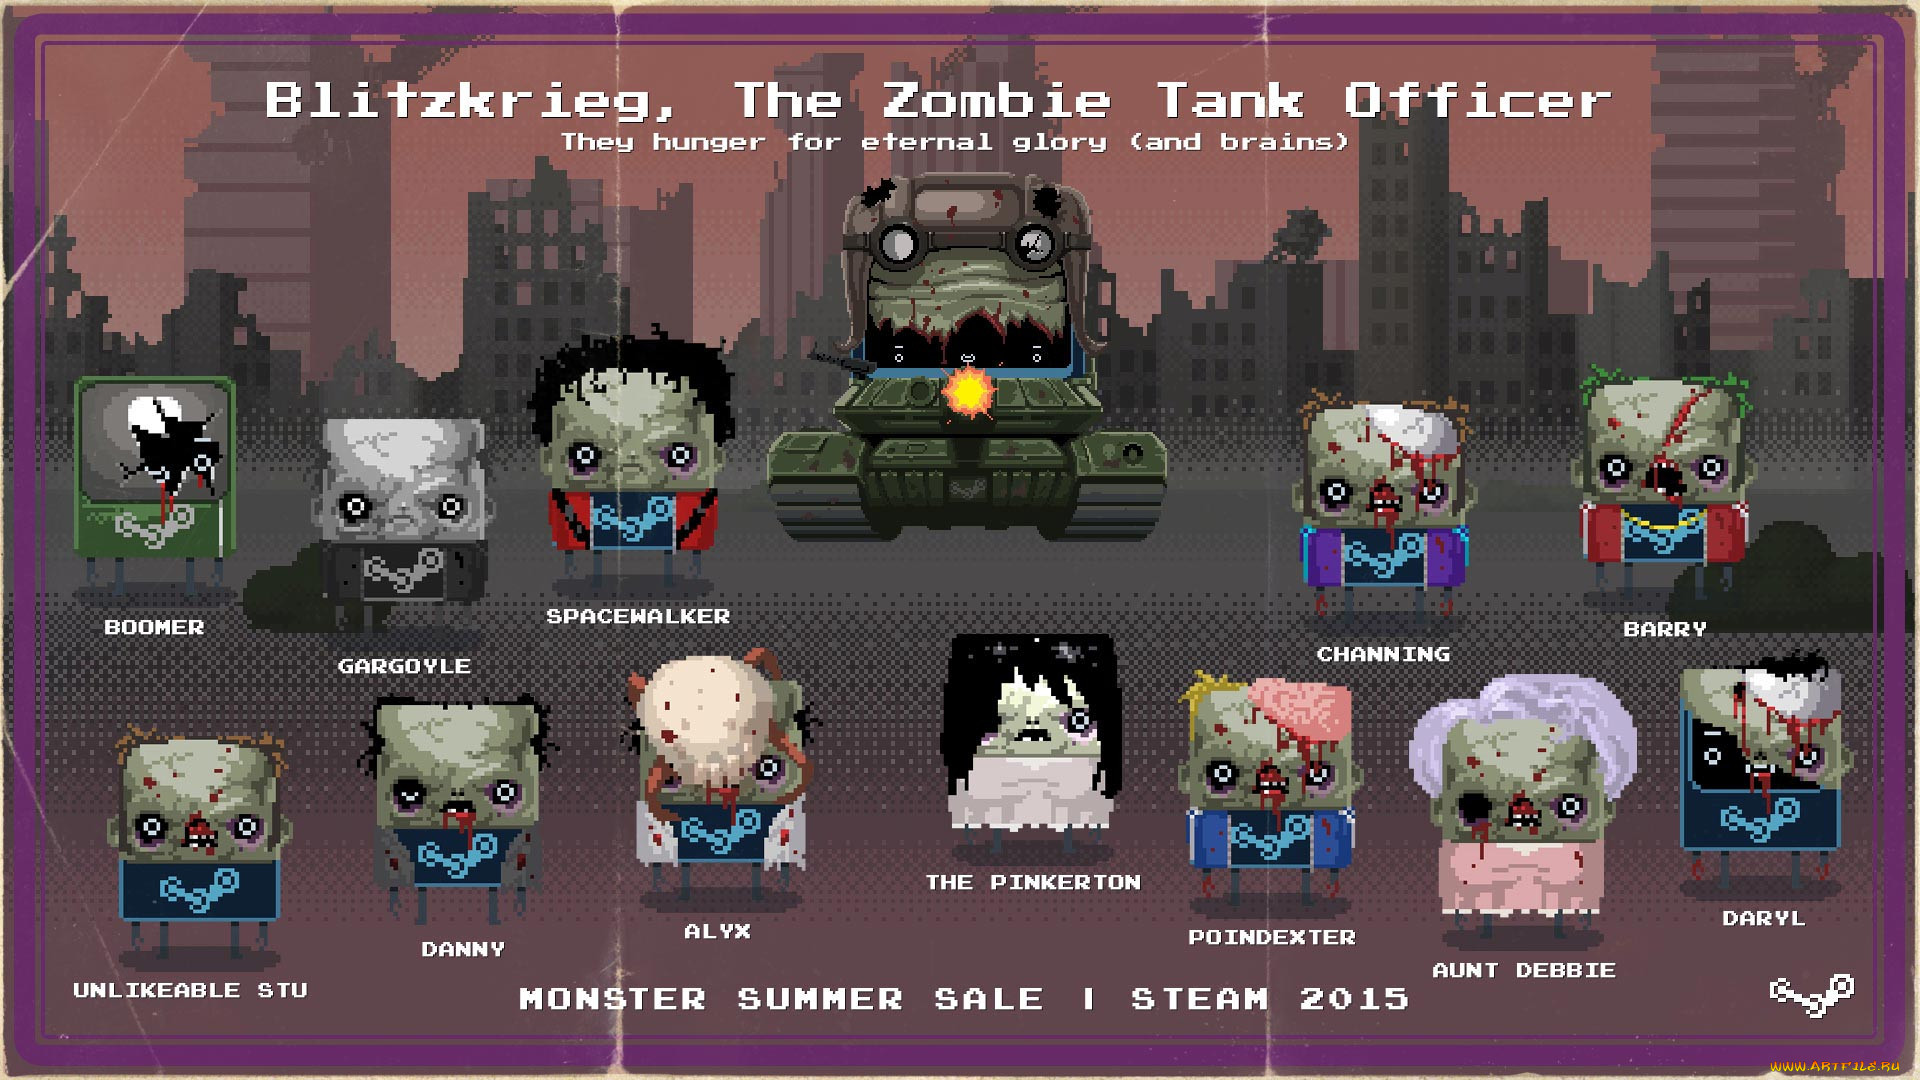 monster summer sale,  , ~~~~~~, , steam, blitzkrieg